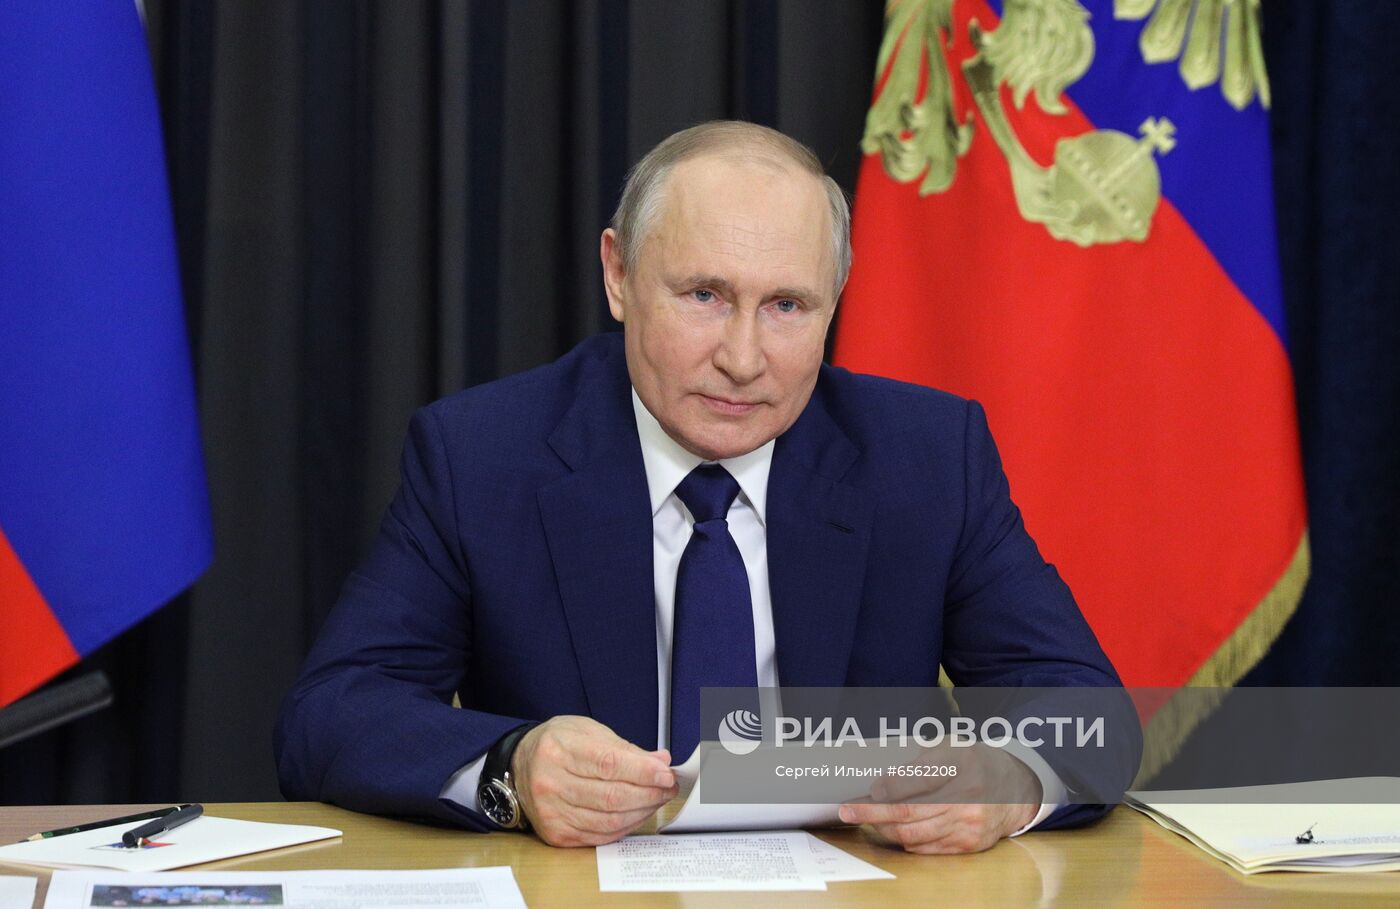 Президент РФ В. Путин провел встречу с семьями, награждёнными орденом "Родительская слава"